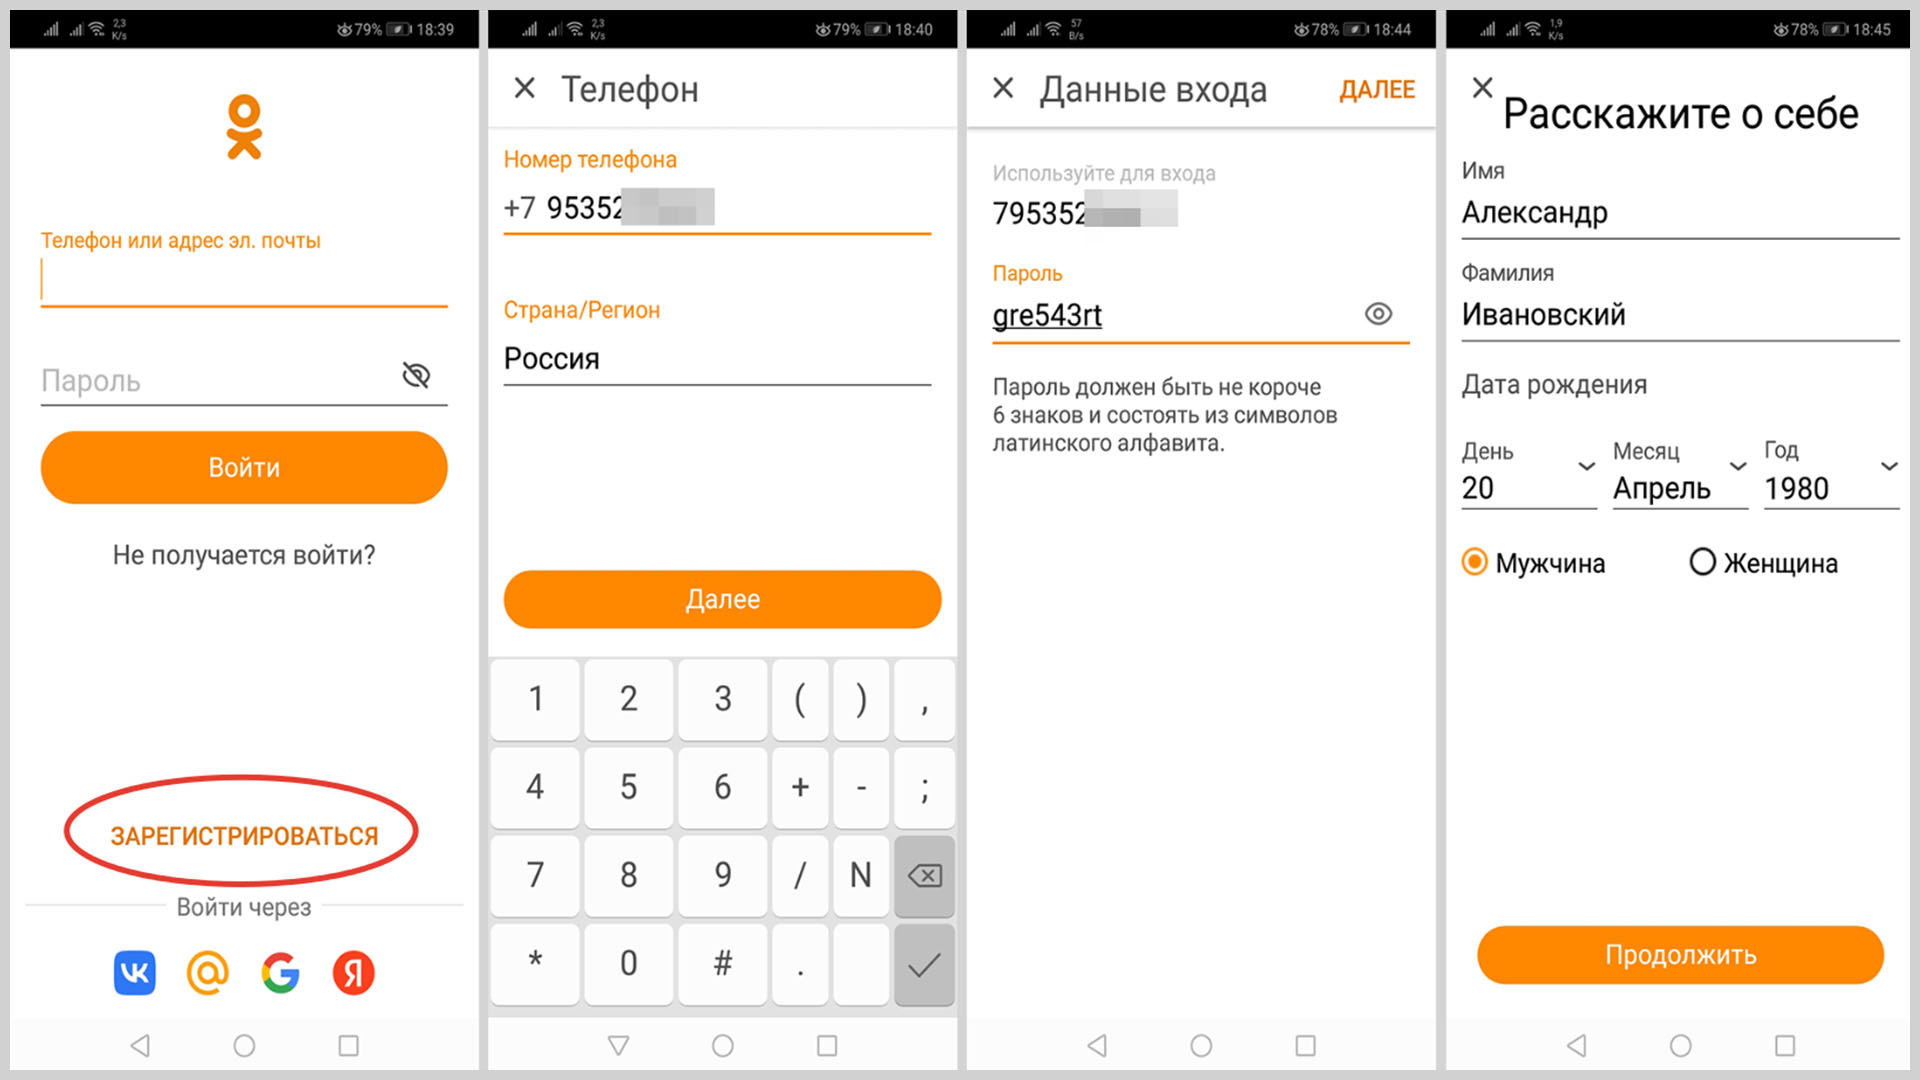 Скриншоты экрана смартфона при регистрации в «Одноклассниках» через приложение.